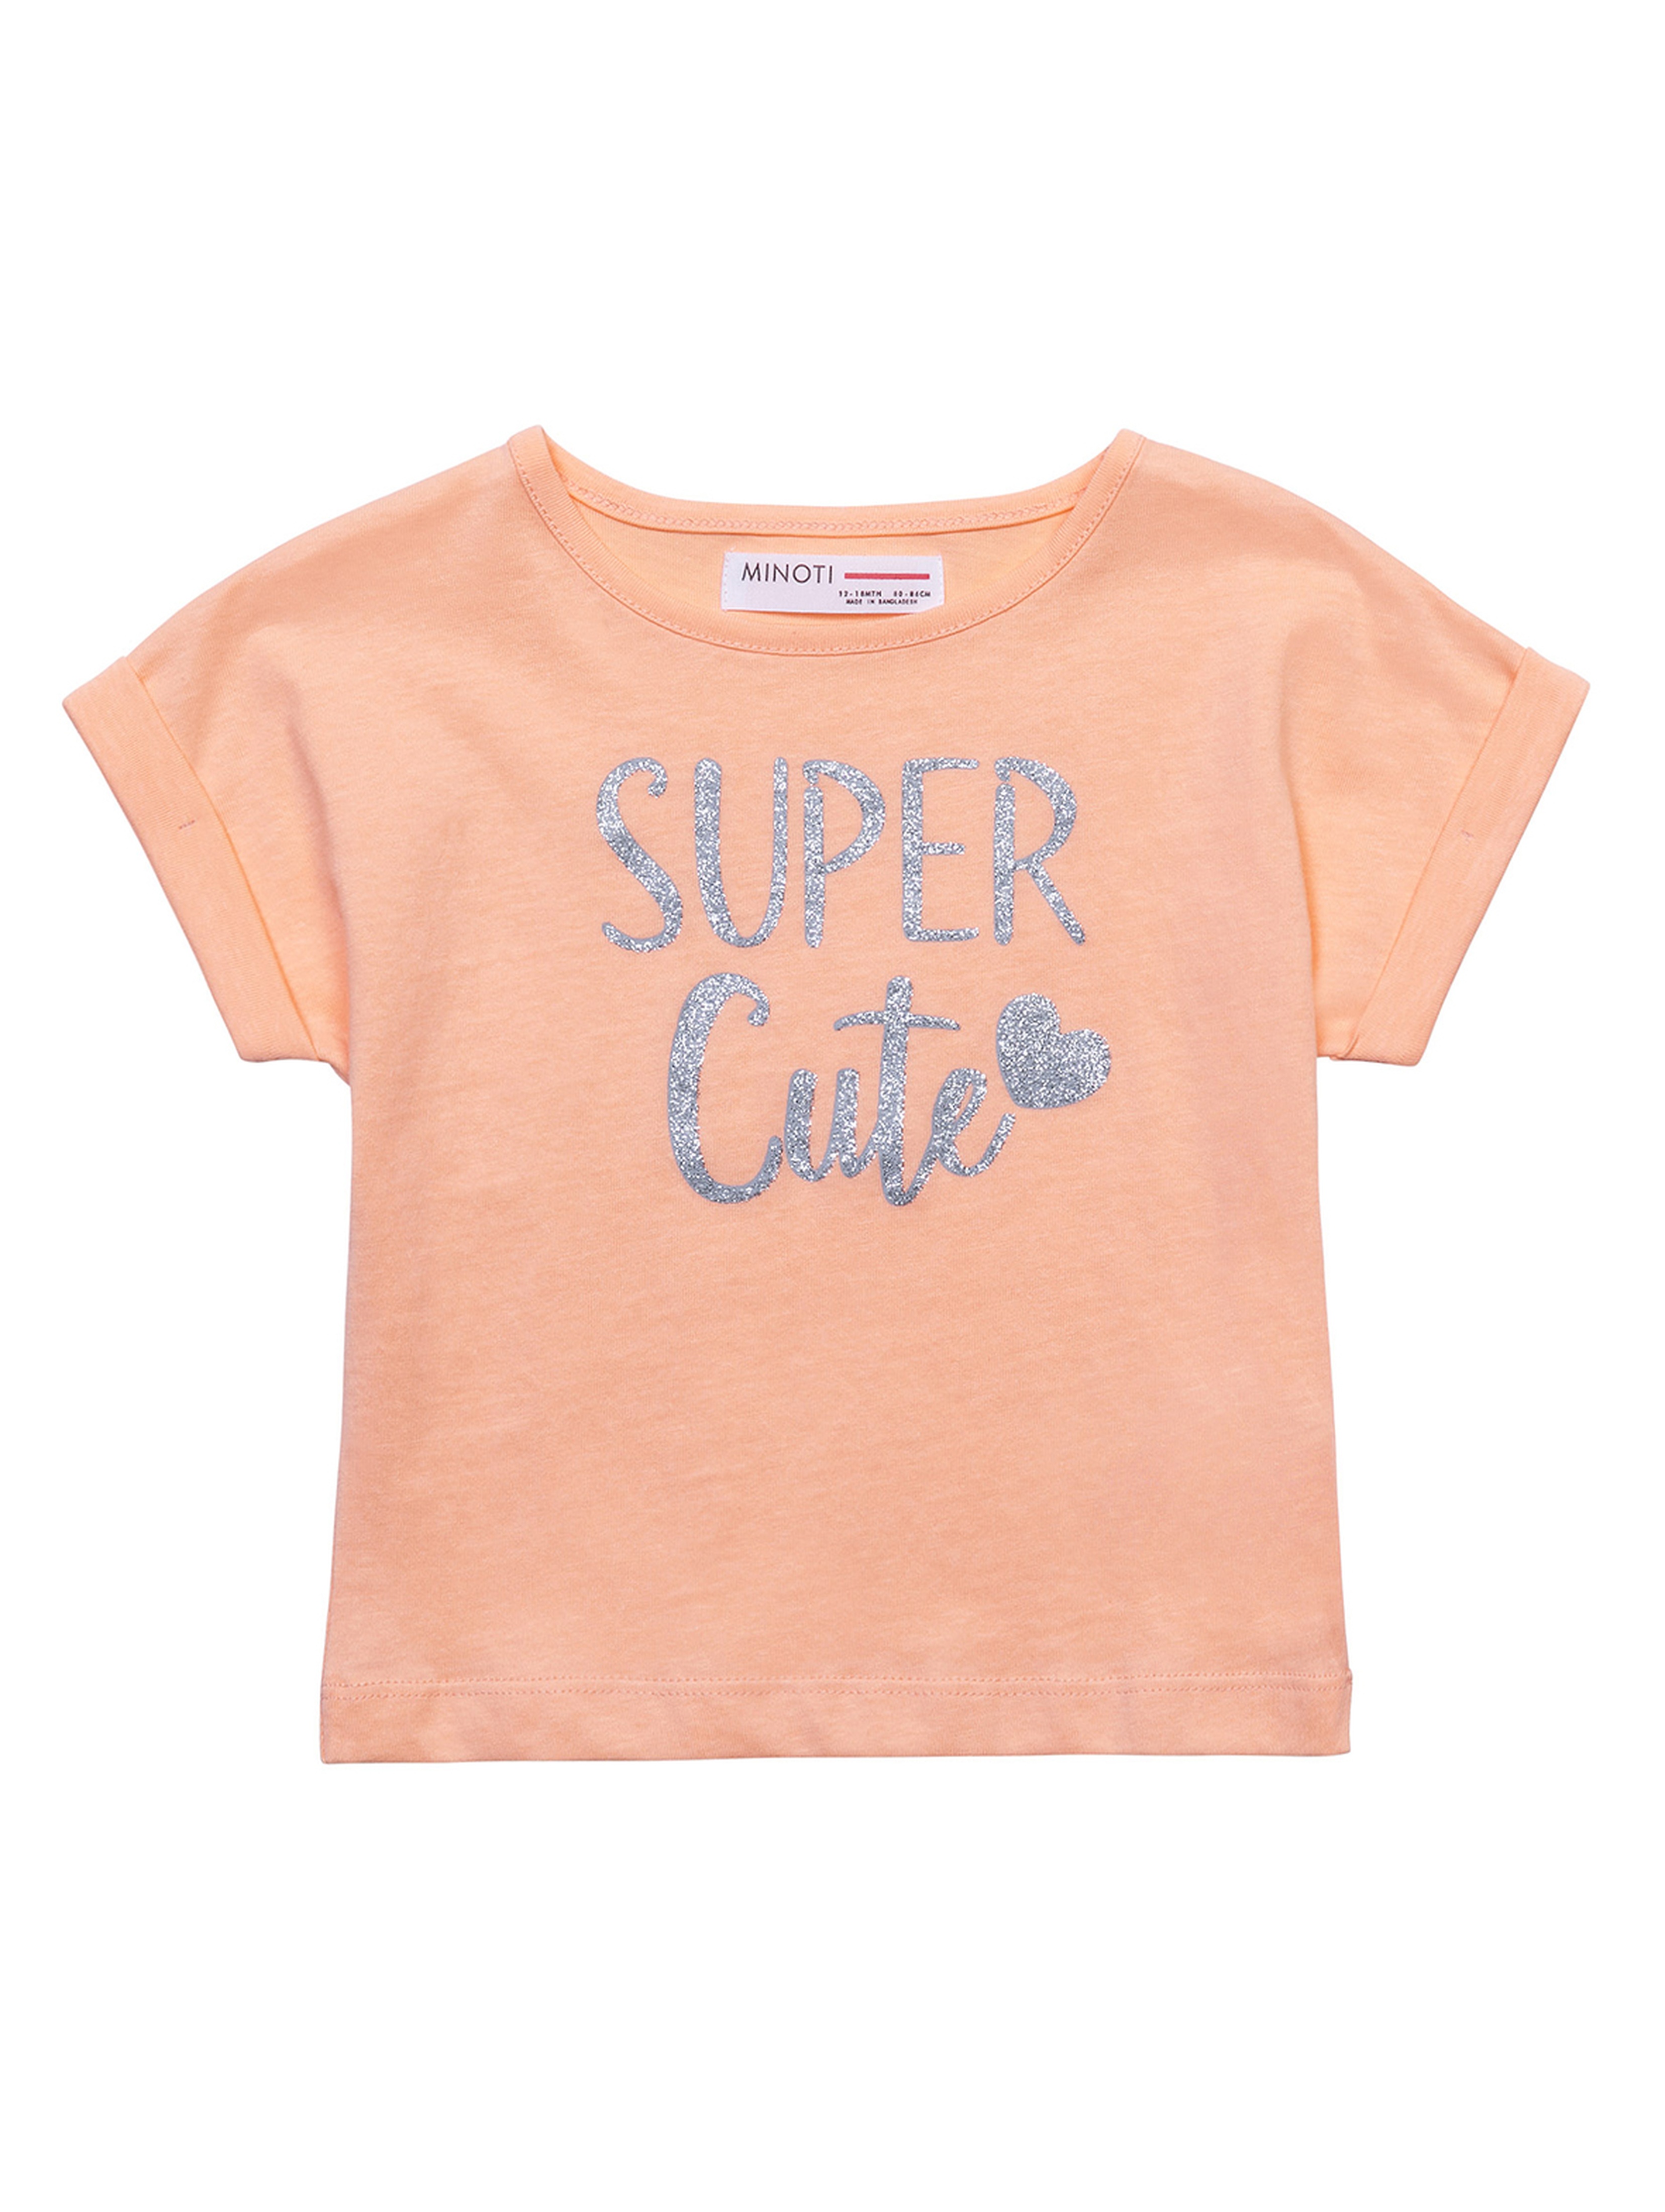 Bawełniany t-shirt pomarańczowy niemowlęcy- Super Cute